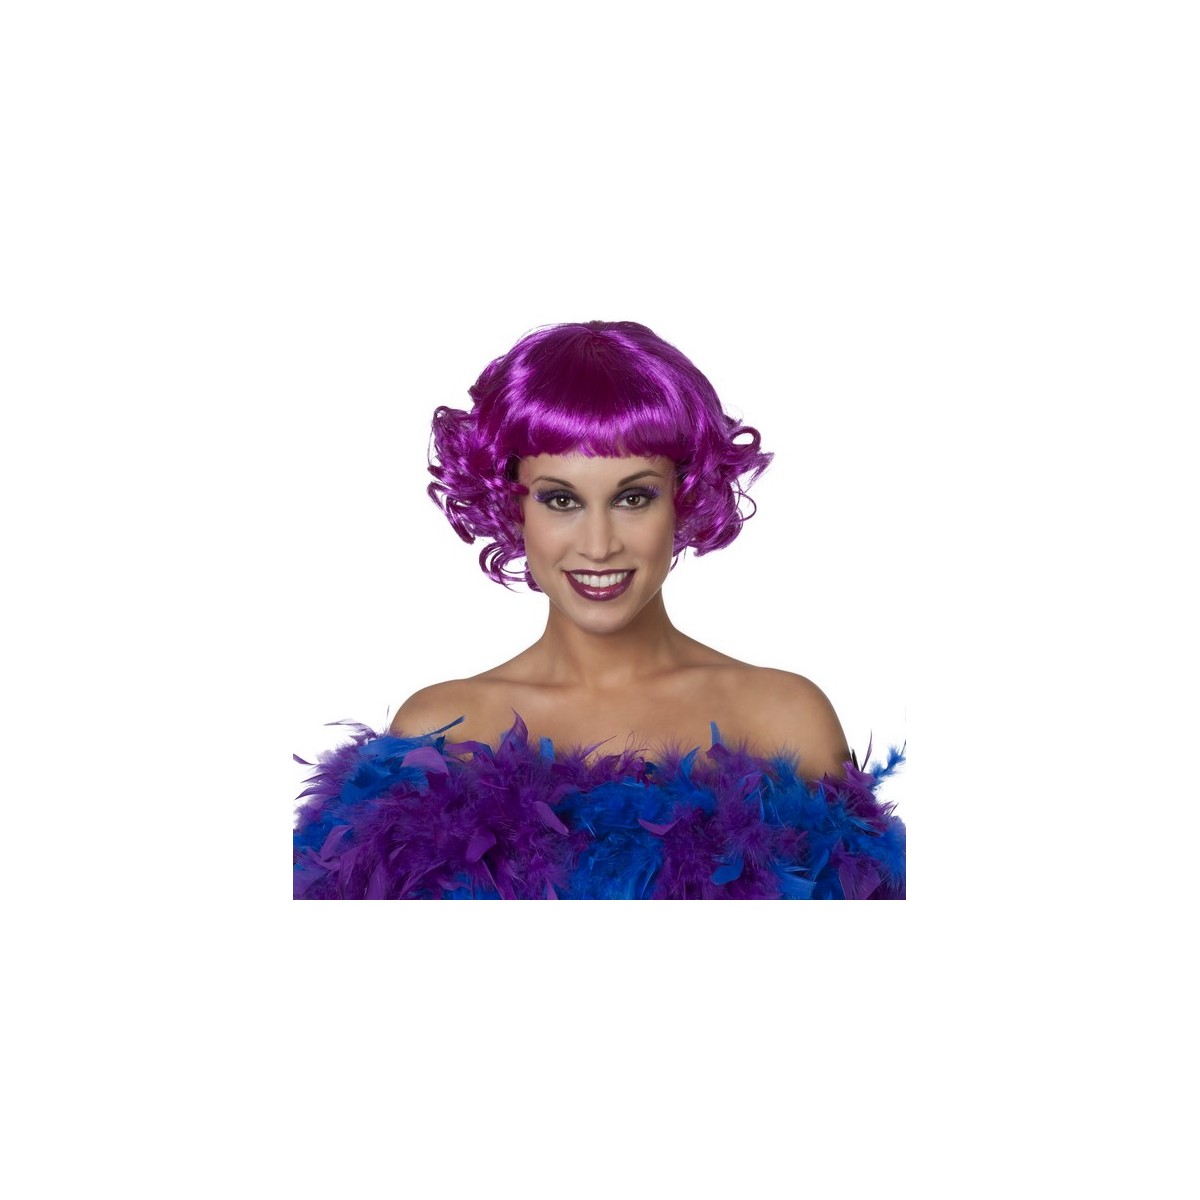 perruque courte violet femme